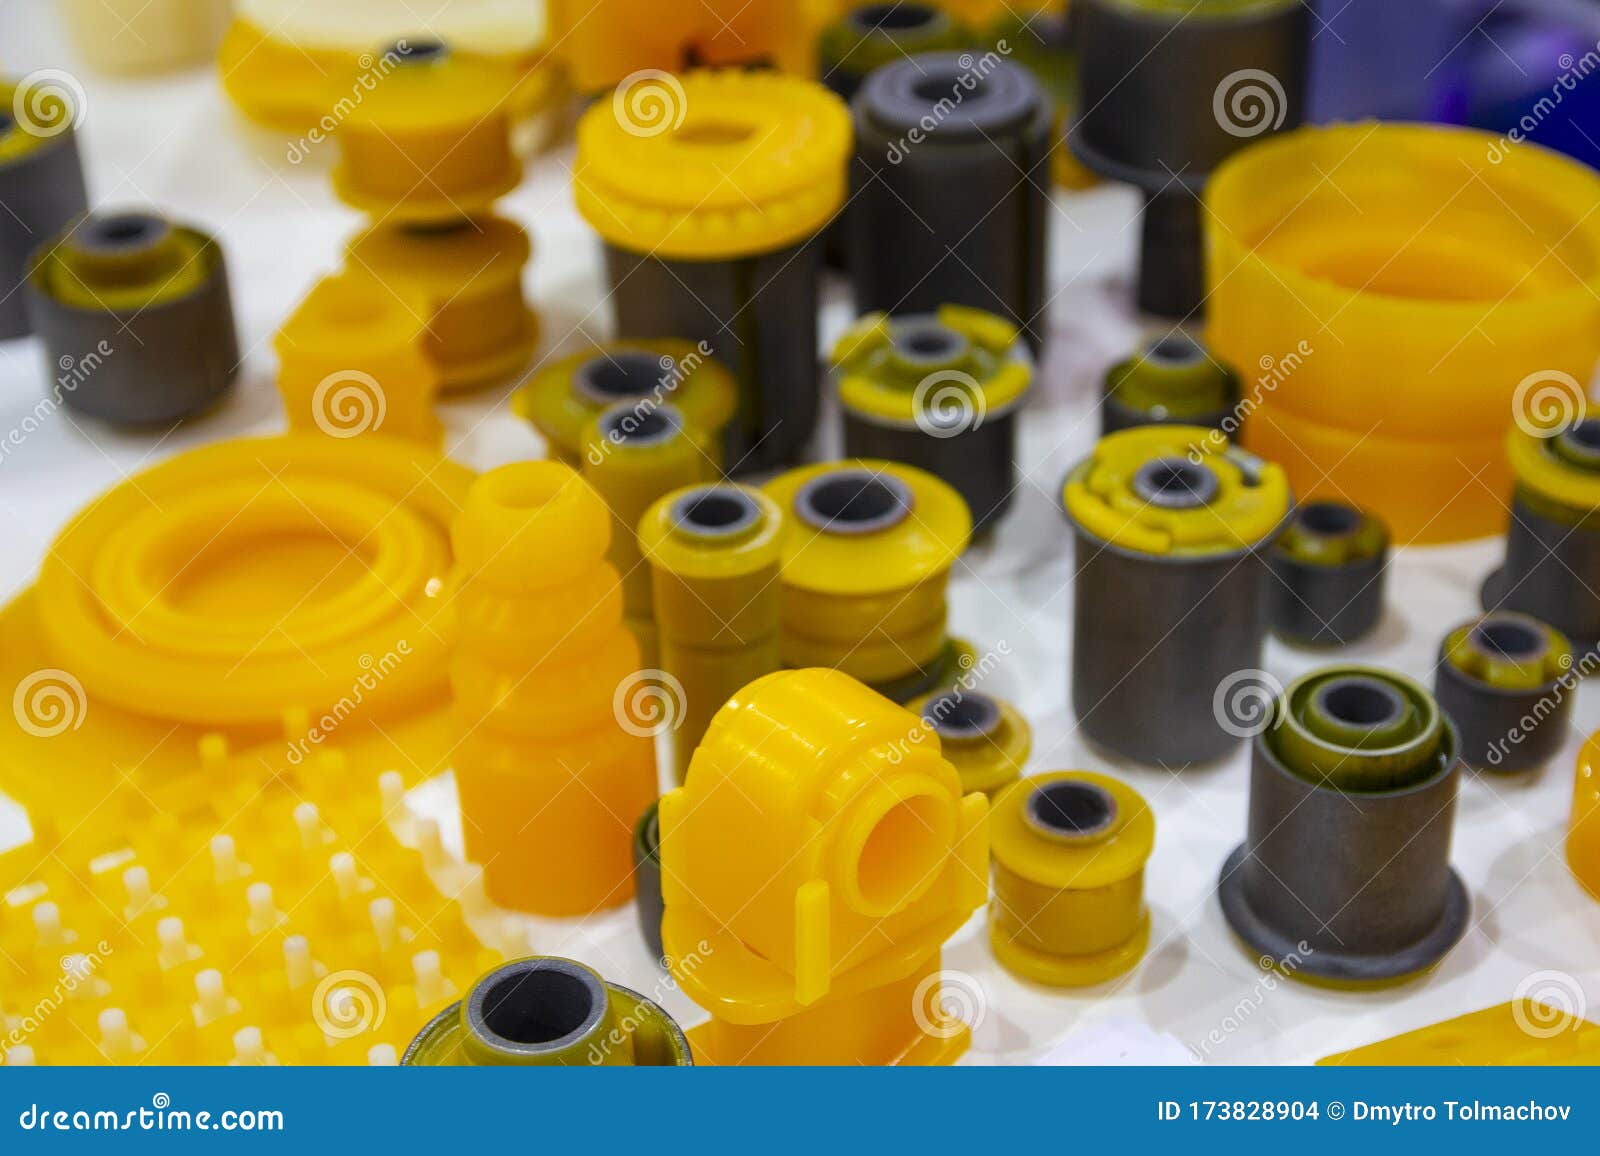 Thermoplastic polyurethane stock image. Image of polyurethane